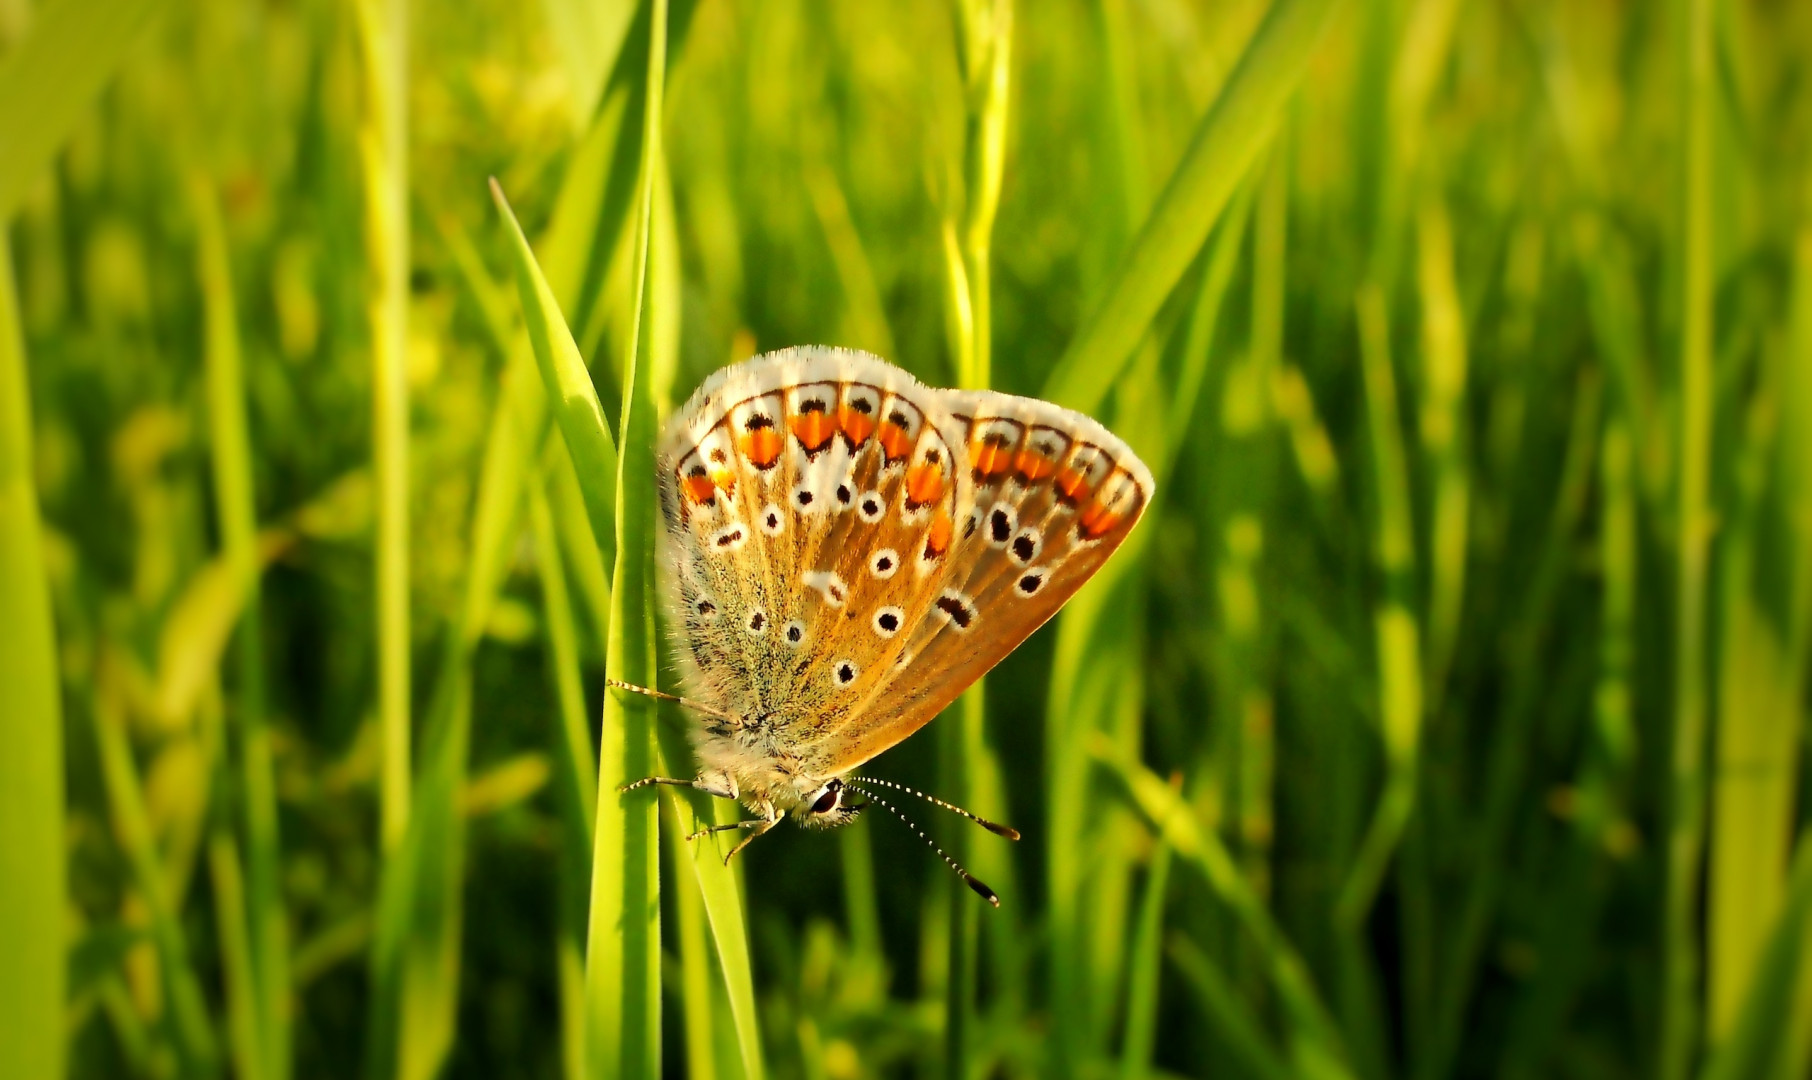 Modraszek agestis na trawie